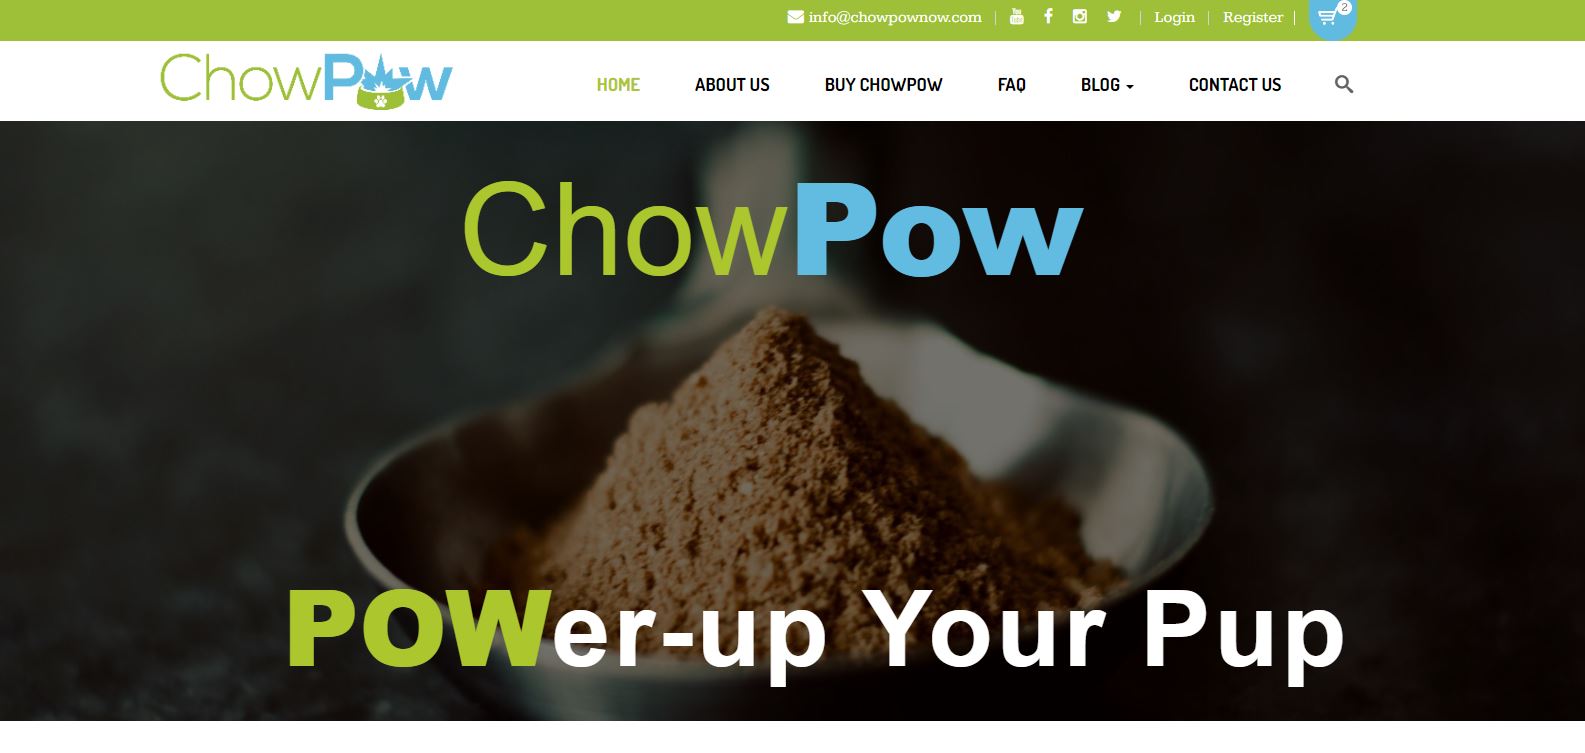 chowpow dog food topper